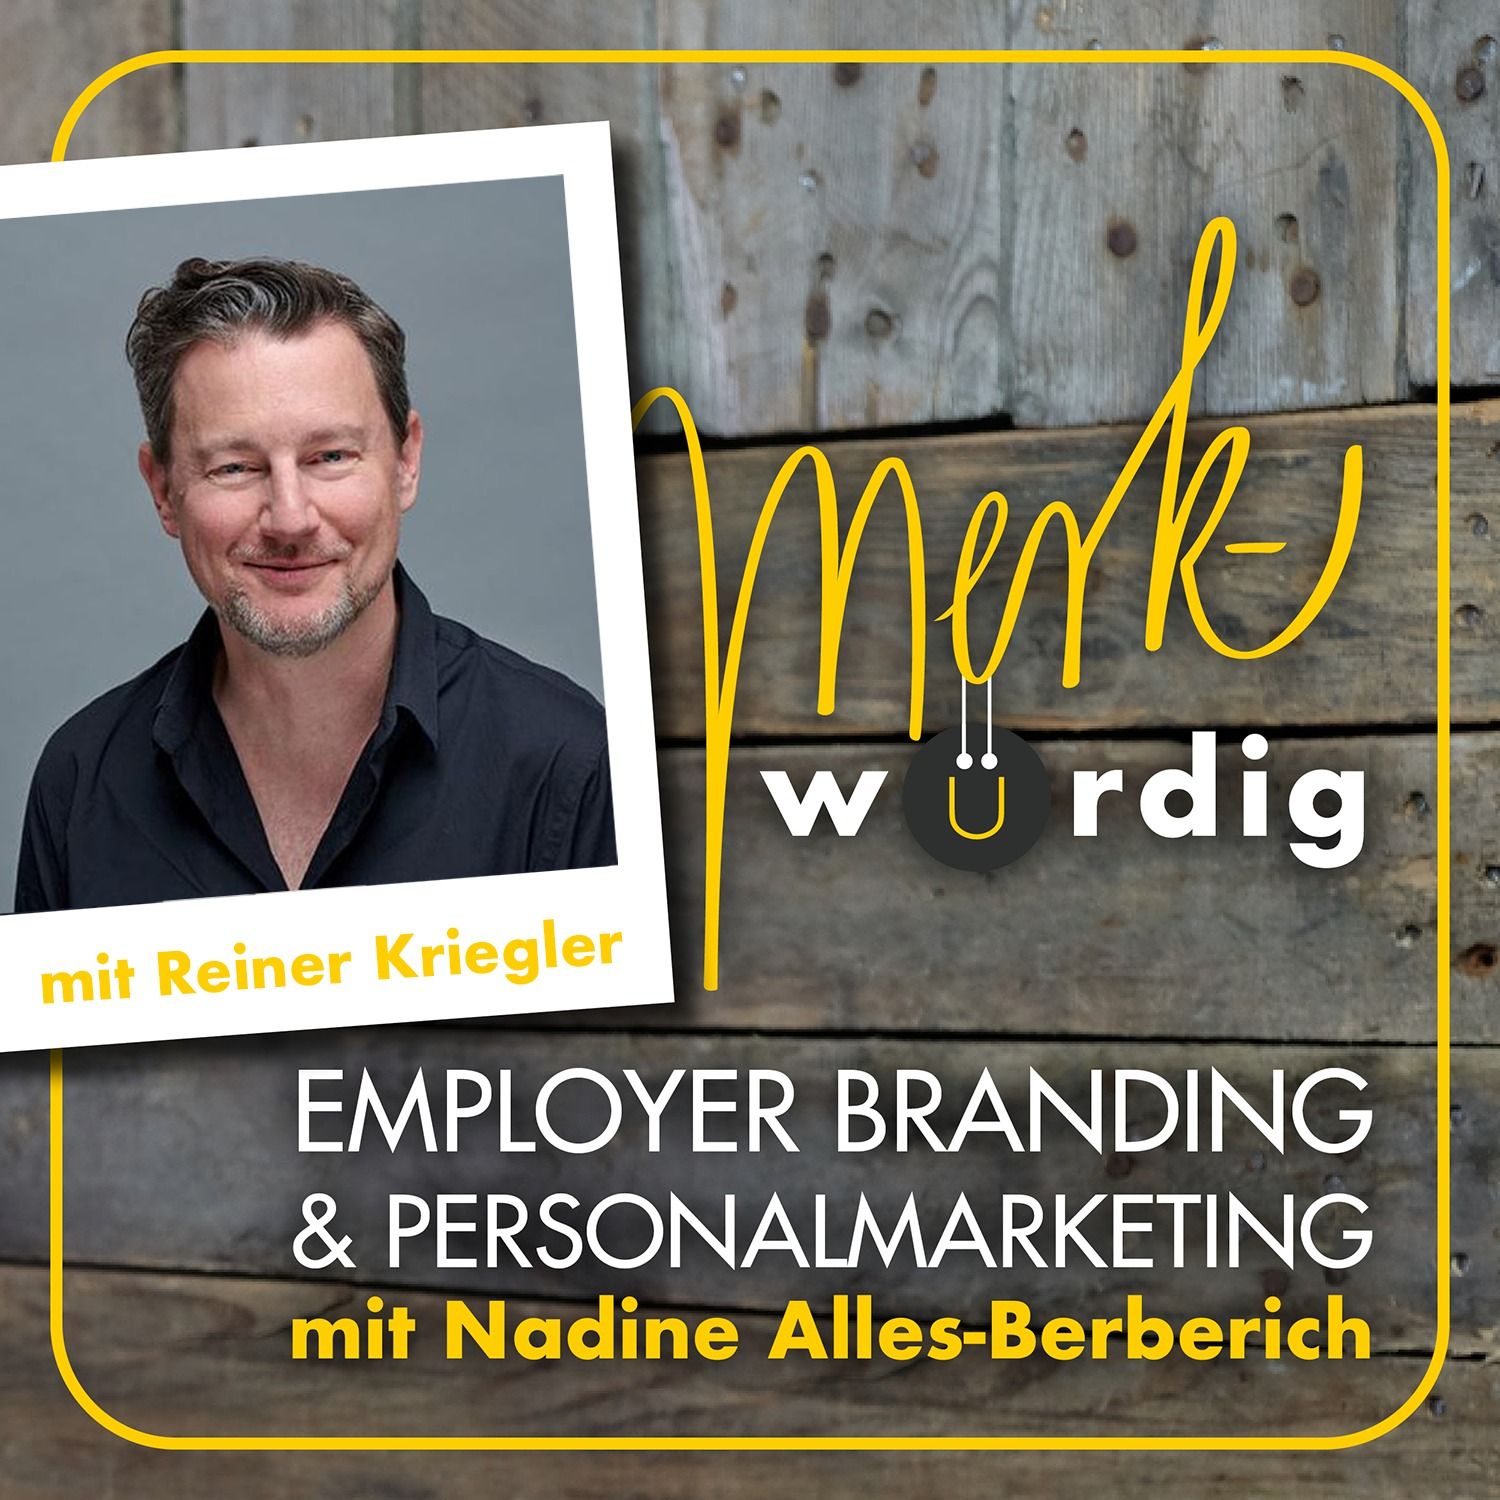 Reiner Kriegler Podcast Cover vom merk-würdig Podcast von Nadine Alles-Berberich zum Thema Employer Branding